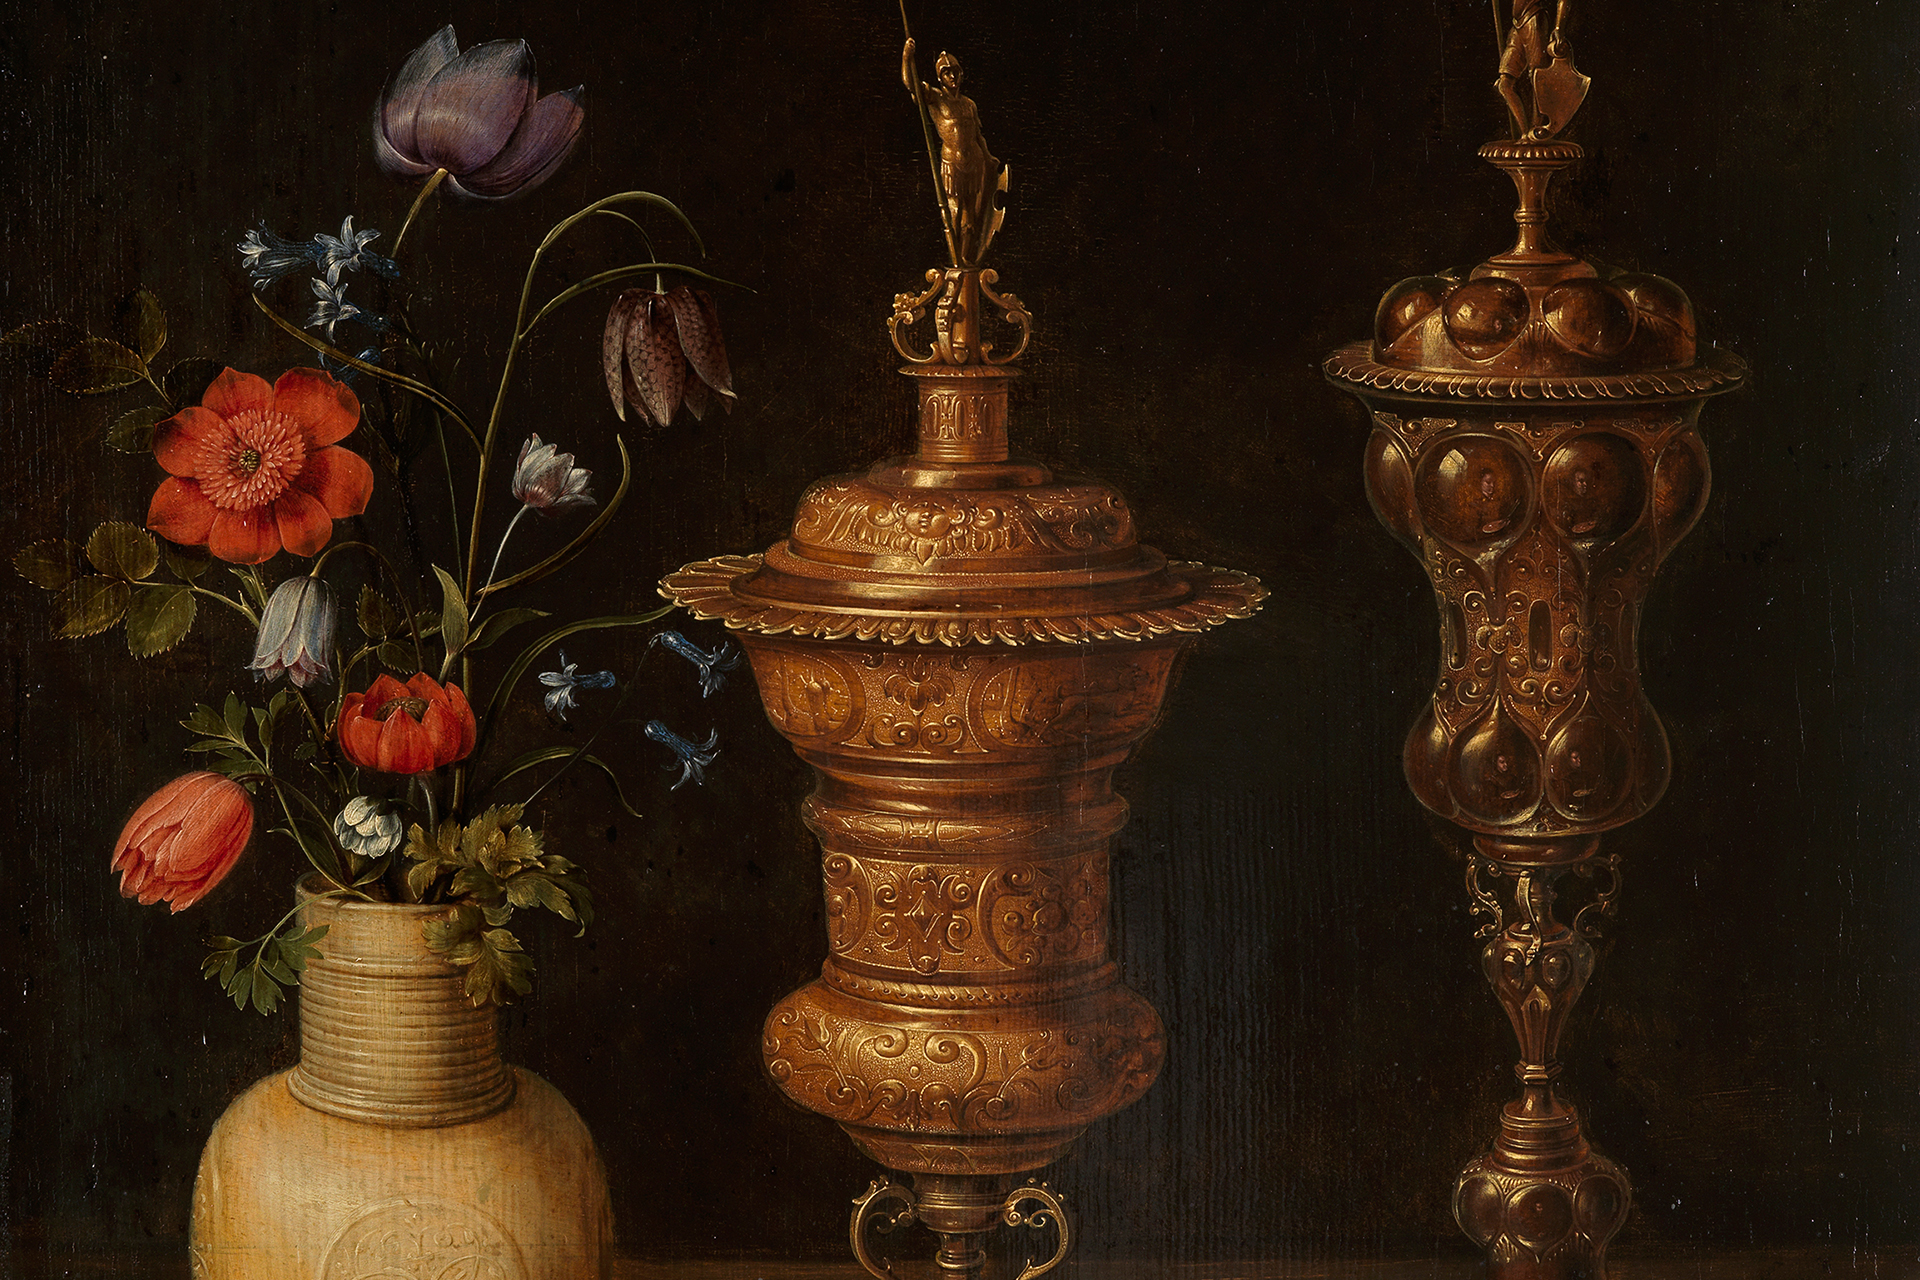 Ausschnitt des Gemäldes von Clara Peeters, auf dem man Blumen und Goldpokale erkennen kann.